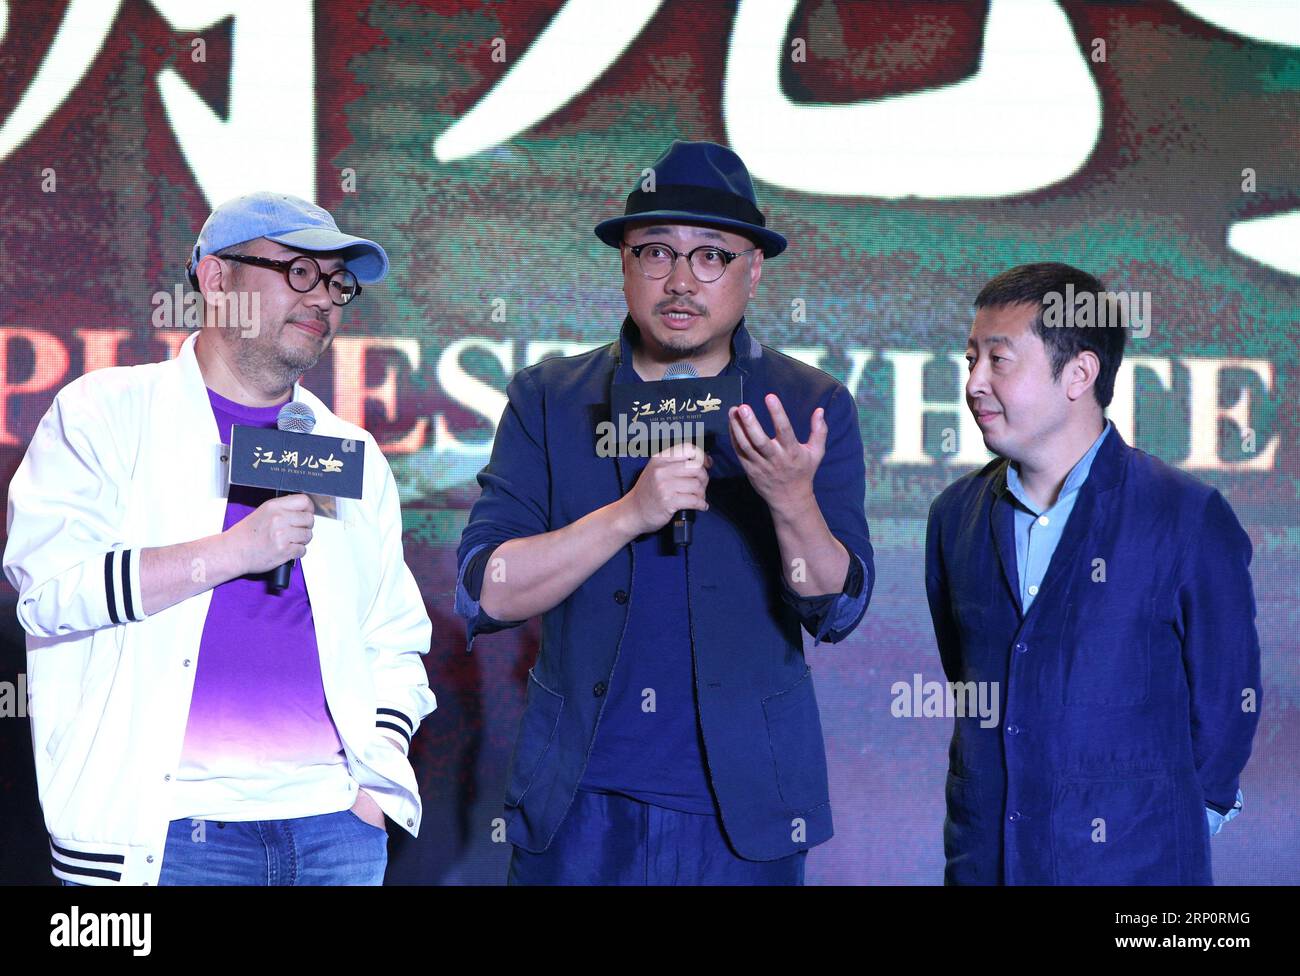 (180523) -- PEKING, 23. Mai 2018 -- Regisseur Jia Zhangke (R), Schauspieler Xu Zheng (C) und Schauspieler Zhang Yibai nehmen am 23. Mai 2018 an einer Pressekonferenz des Films Ash Is Purest White in Peking, der Hauptstadt Chinas, Teil. Der von Jia Zhangke inszenierte Film wird am 21. September landesweit gezeigt. )(MCG) CHINA-BEIJING-FILM ASH IST DIE REINSTE WEISSE PRESSEKONFERENZ (CN) GAOXJING PUBLICATIONXNOTXINXCHN Stockfoto